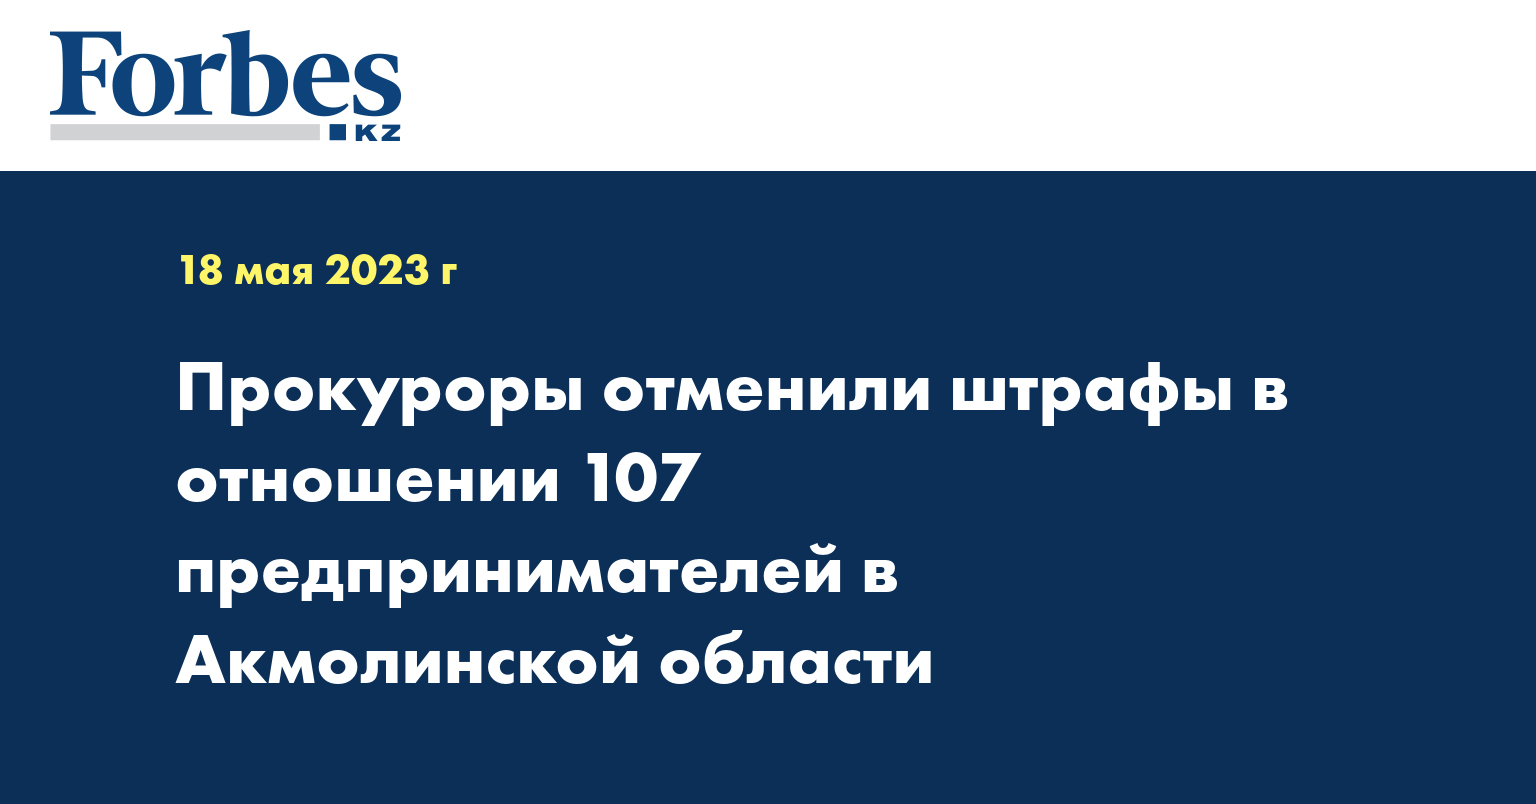 Прокуроры отменили штрафы в отношении 107 предпринимателей в Акмолинской области